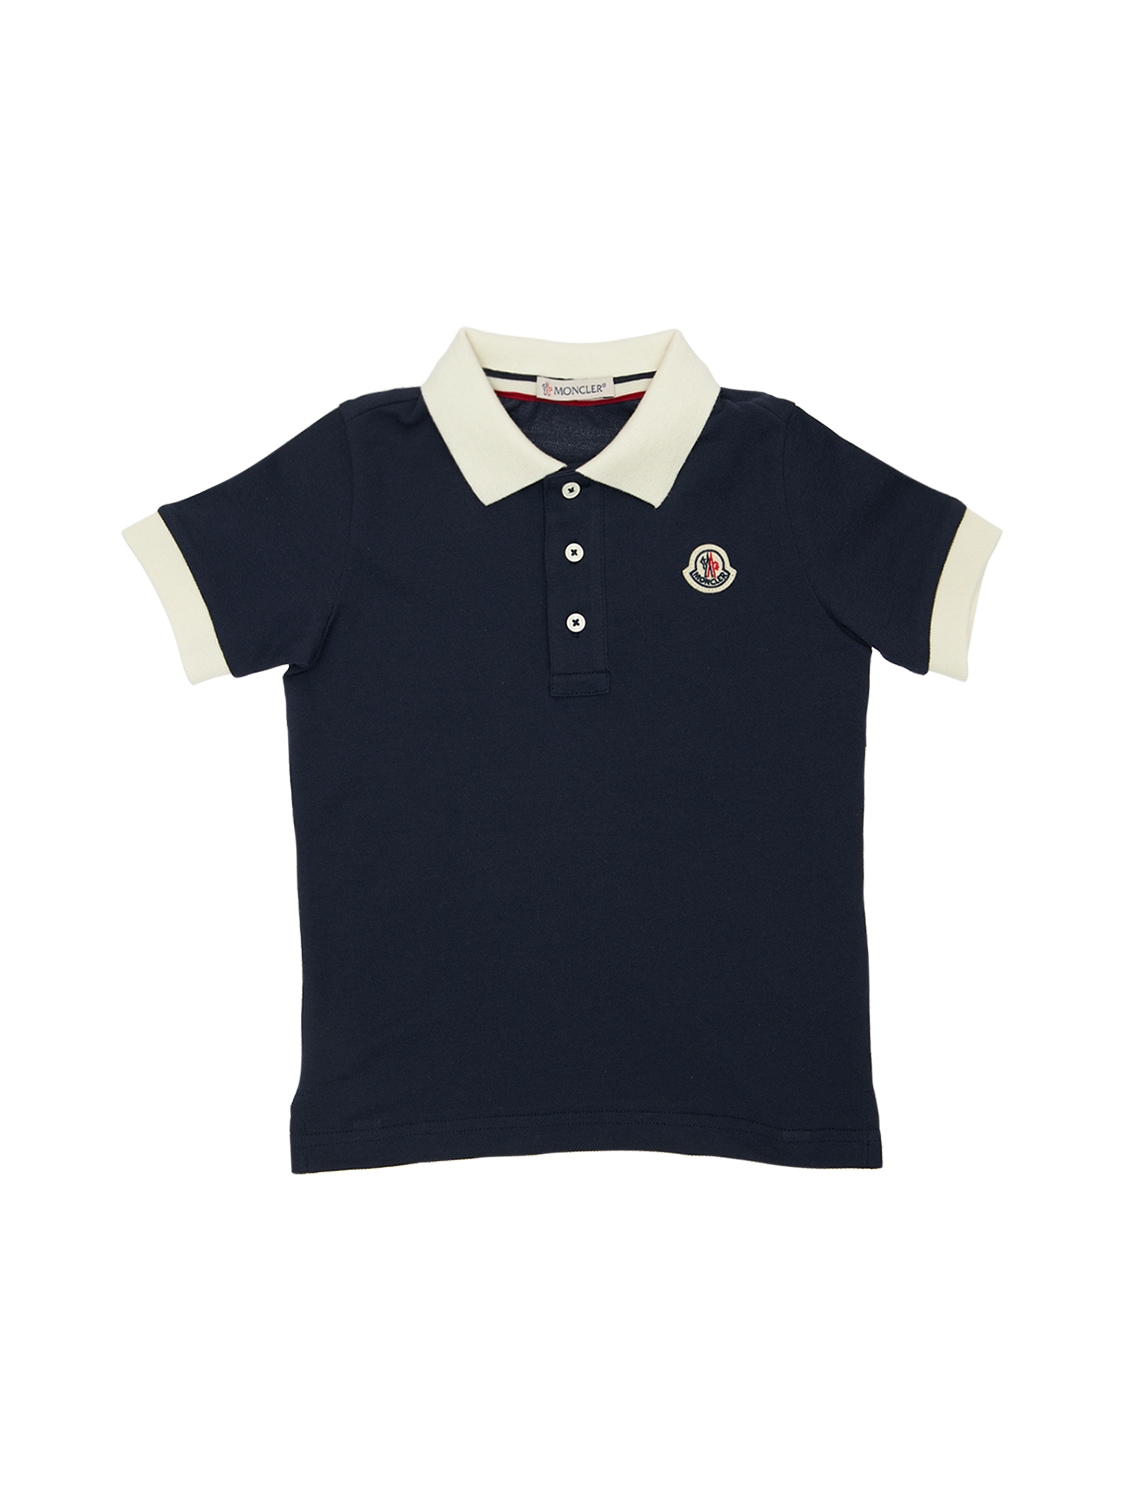 Moncler Kids' Cotton Piquet Polo Shirt In Navy